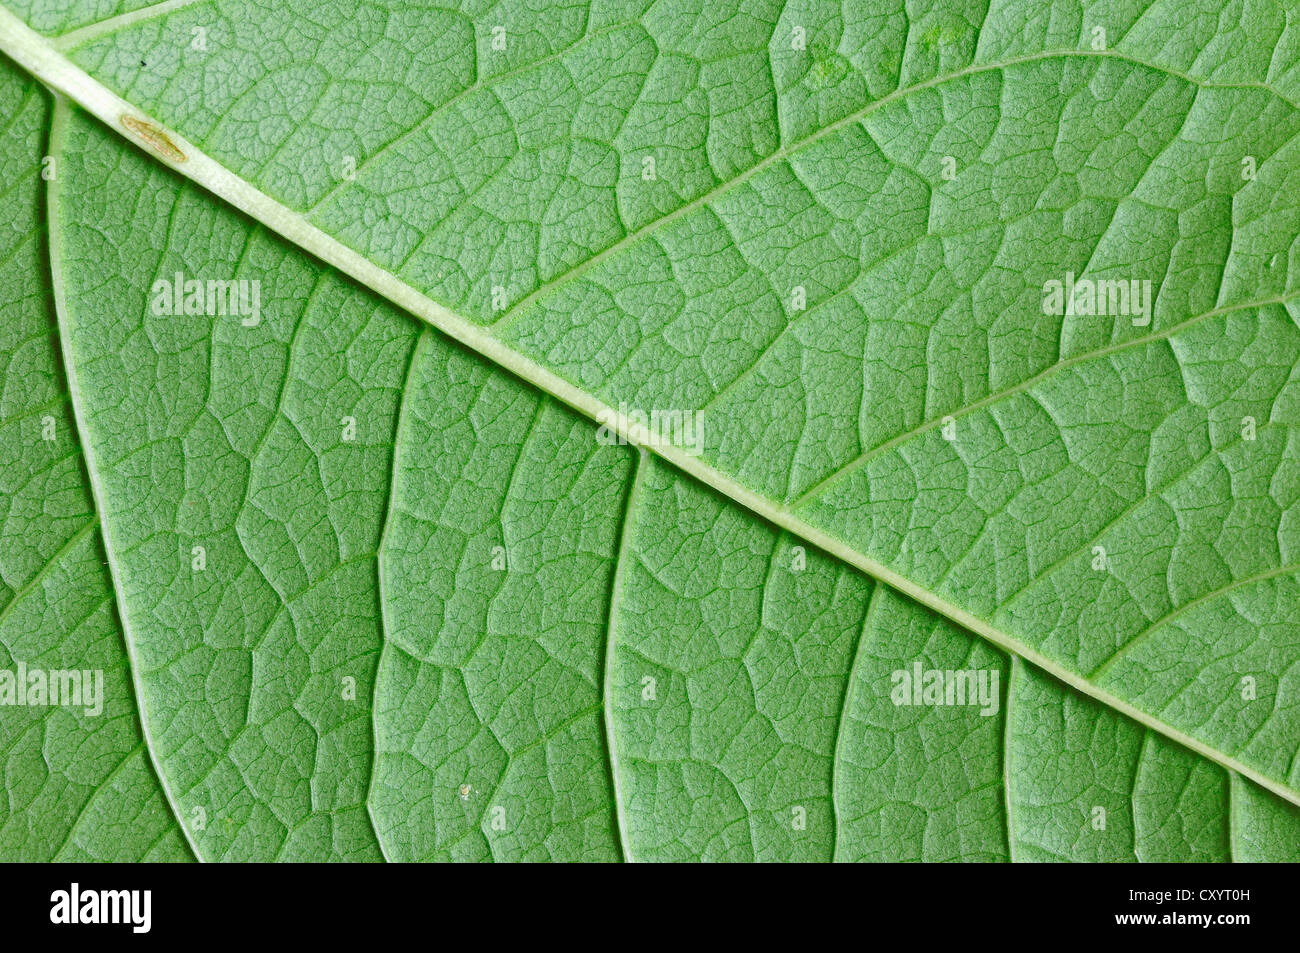 Cogwood comune (Cornus sanguinea), per una visualizzazione dettagliata delle foglie, Renania settentrionale-Vestfalia Foto Stock